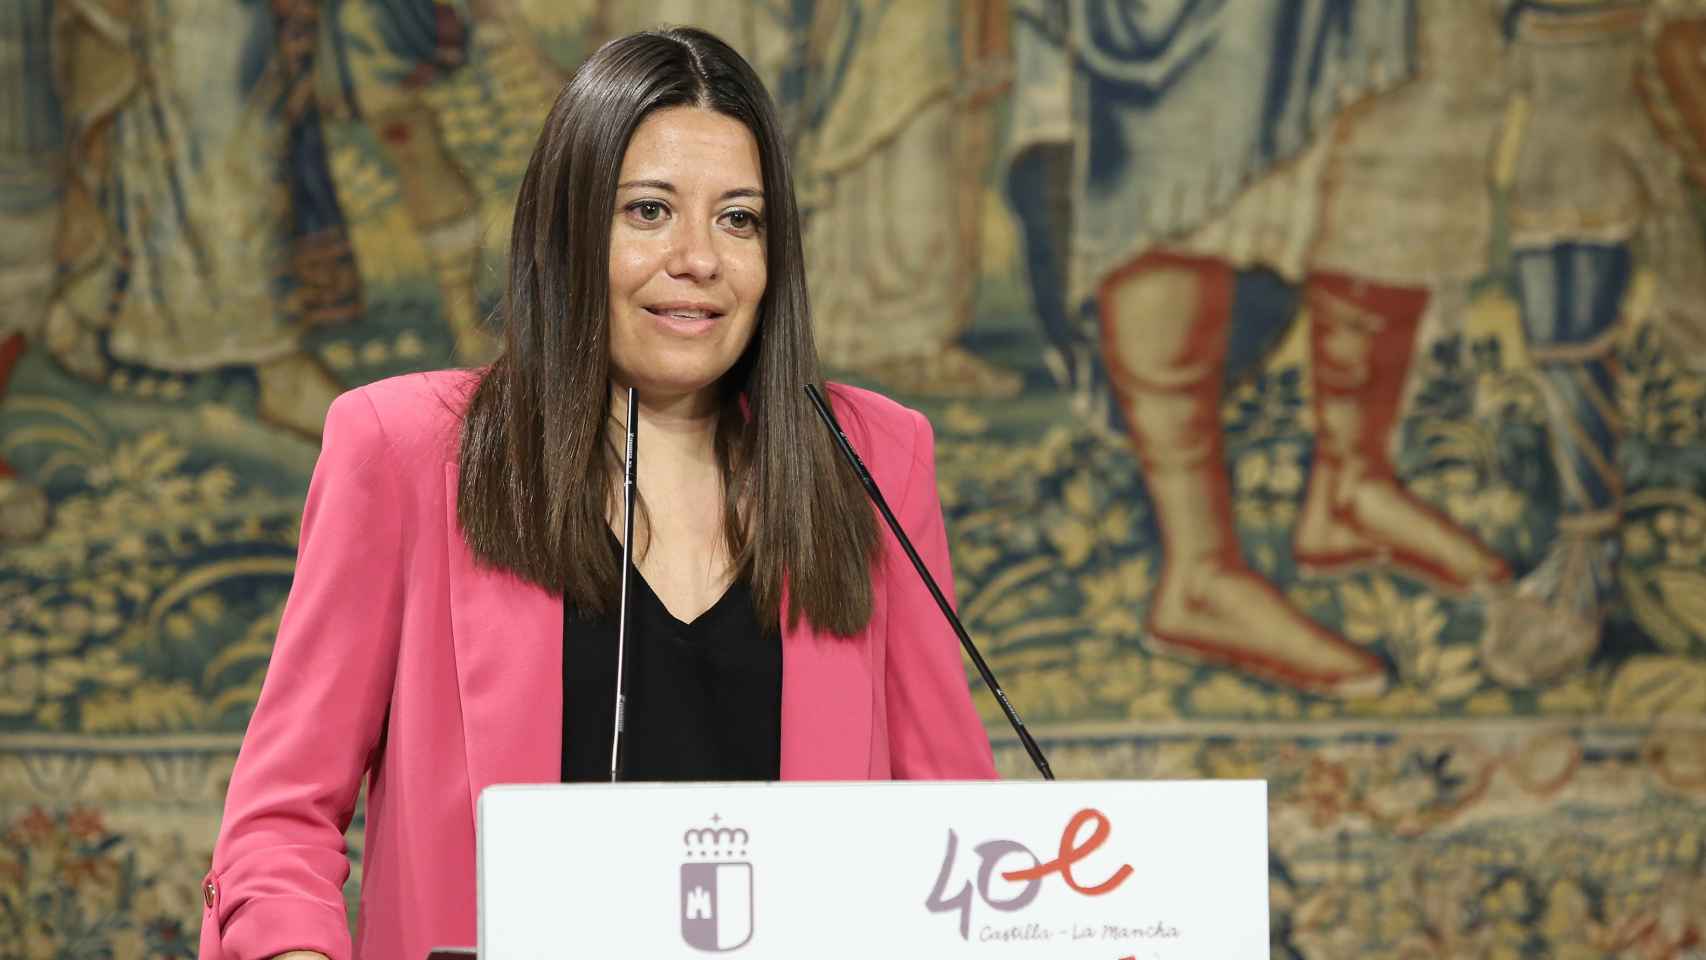 Bárbara García Torijano, consejera de Bienestar Social de Castilla-La Mancha